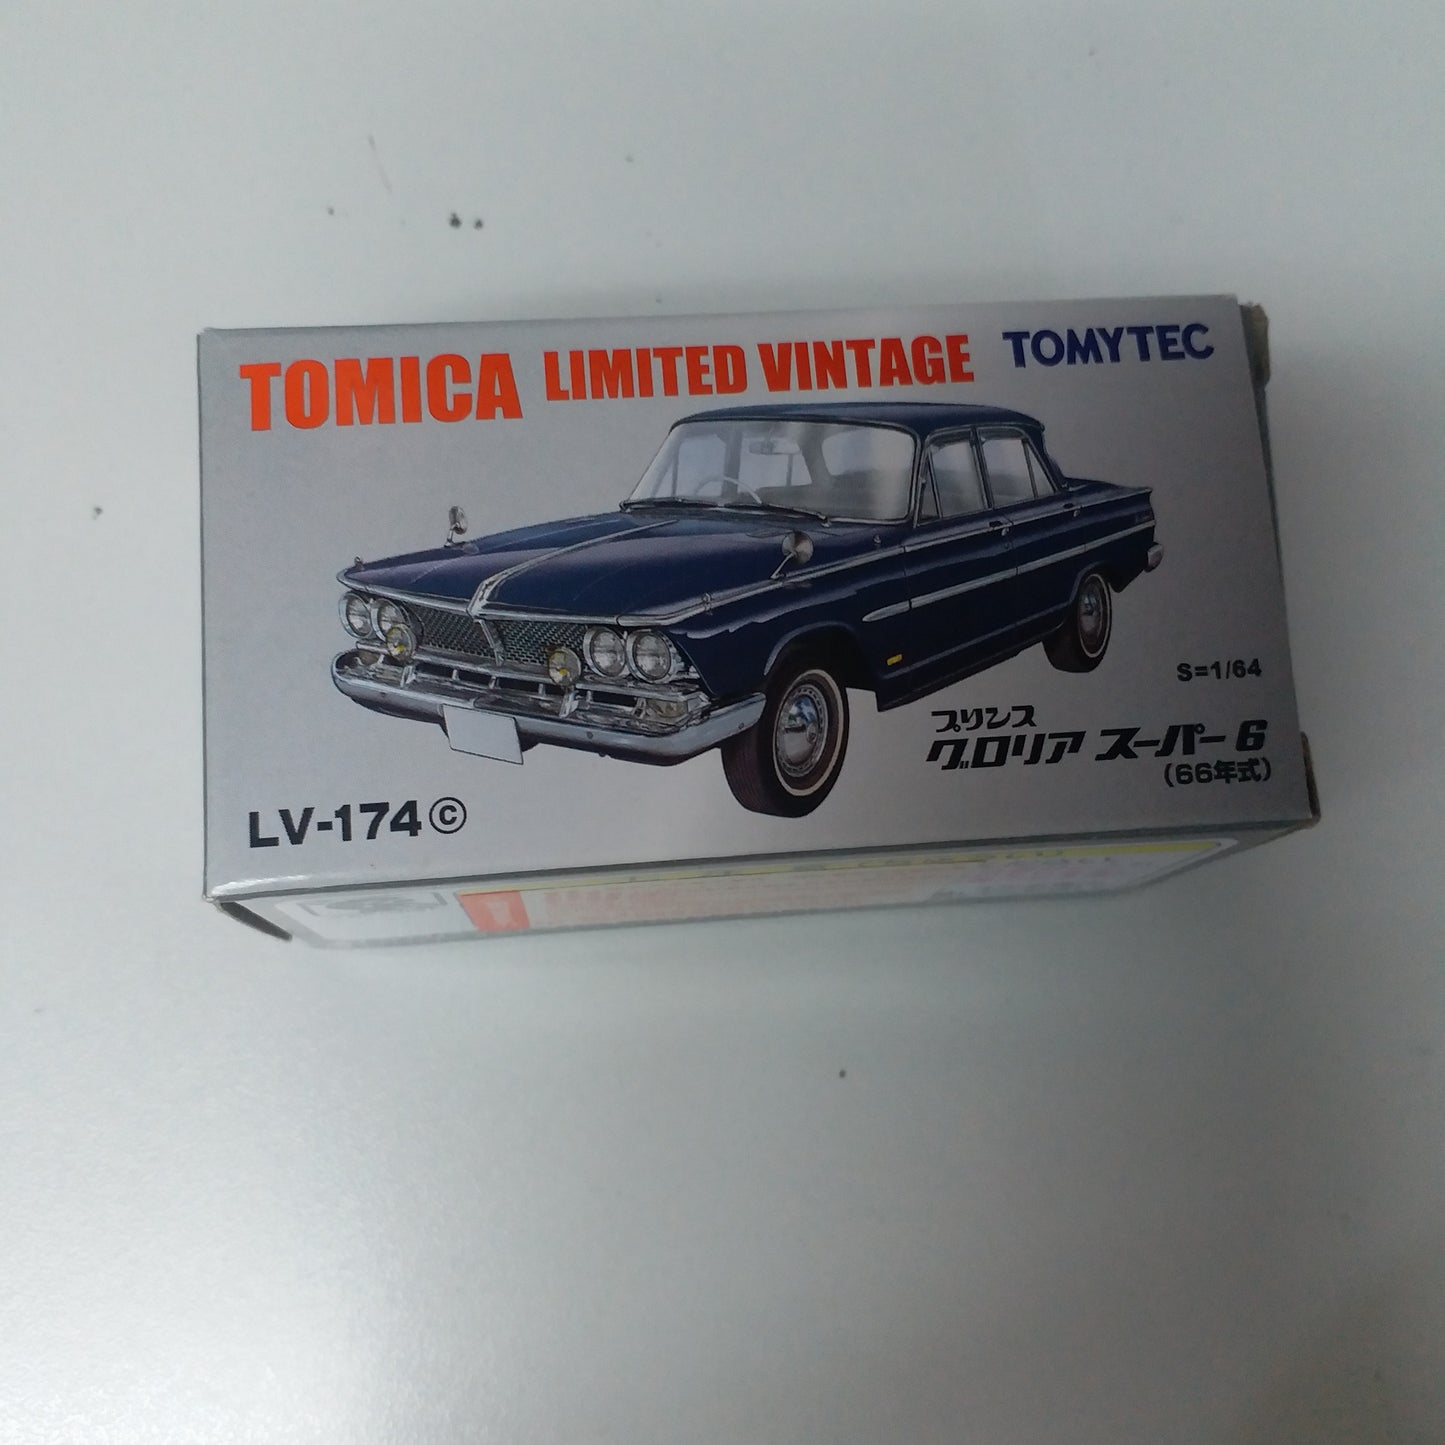 Tomica Limited Vintage LV-174c Prince Gloria Super6 (Blue)